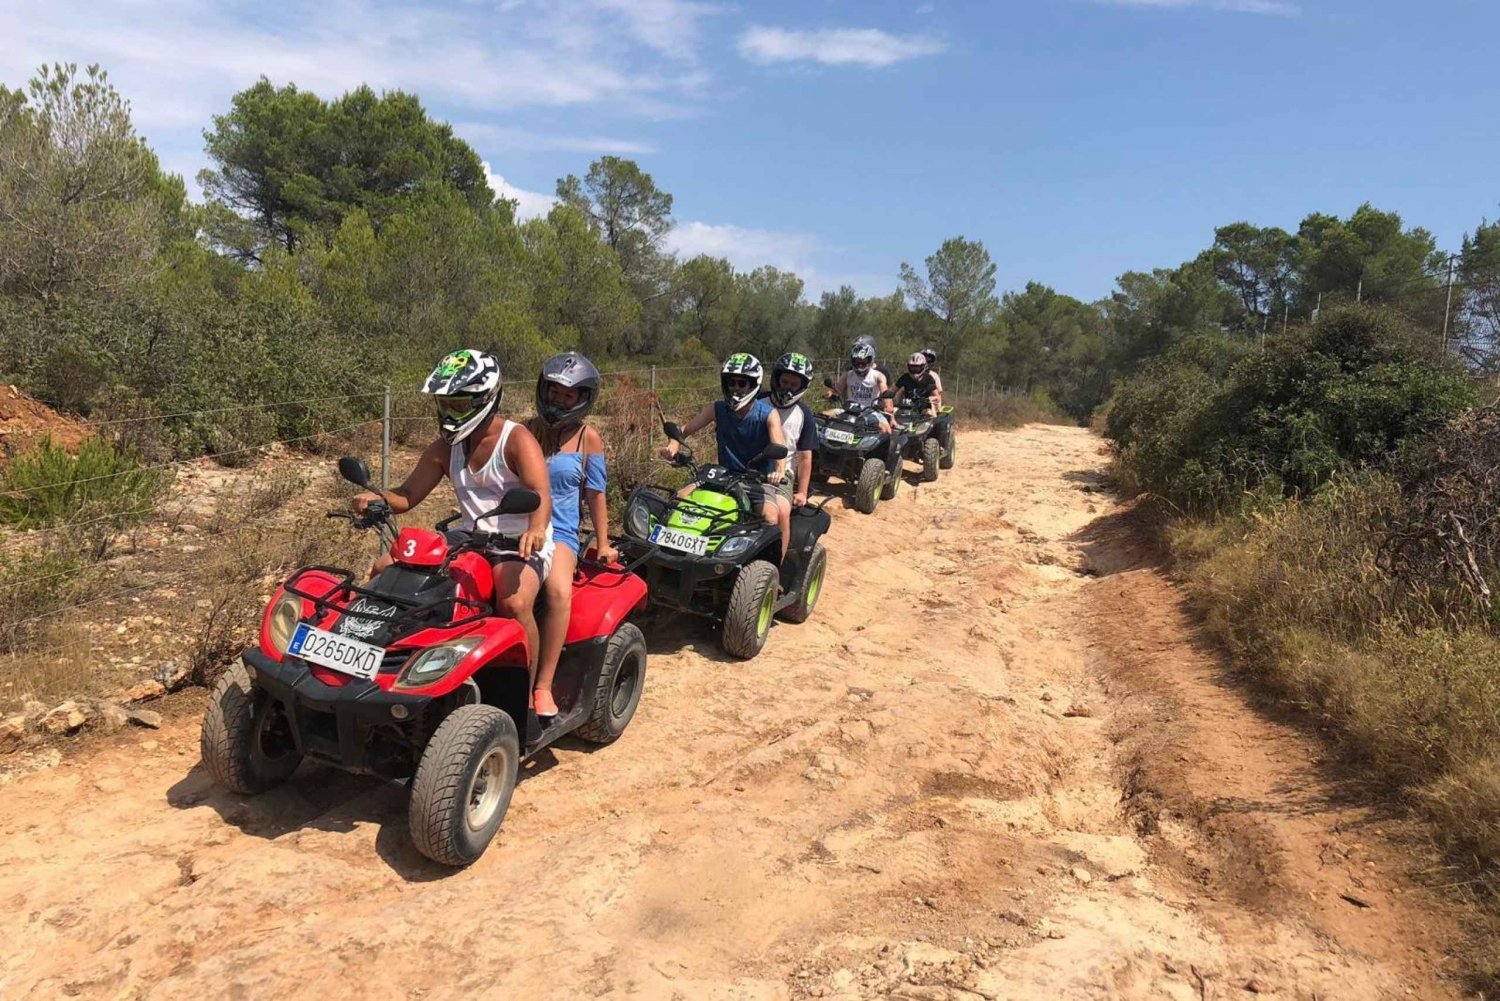 Mallorca: Quad Bike Adventure Safari and Swim in a Cala